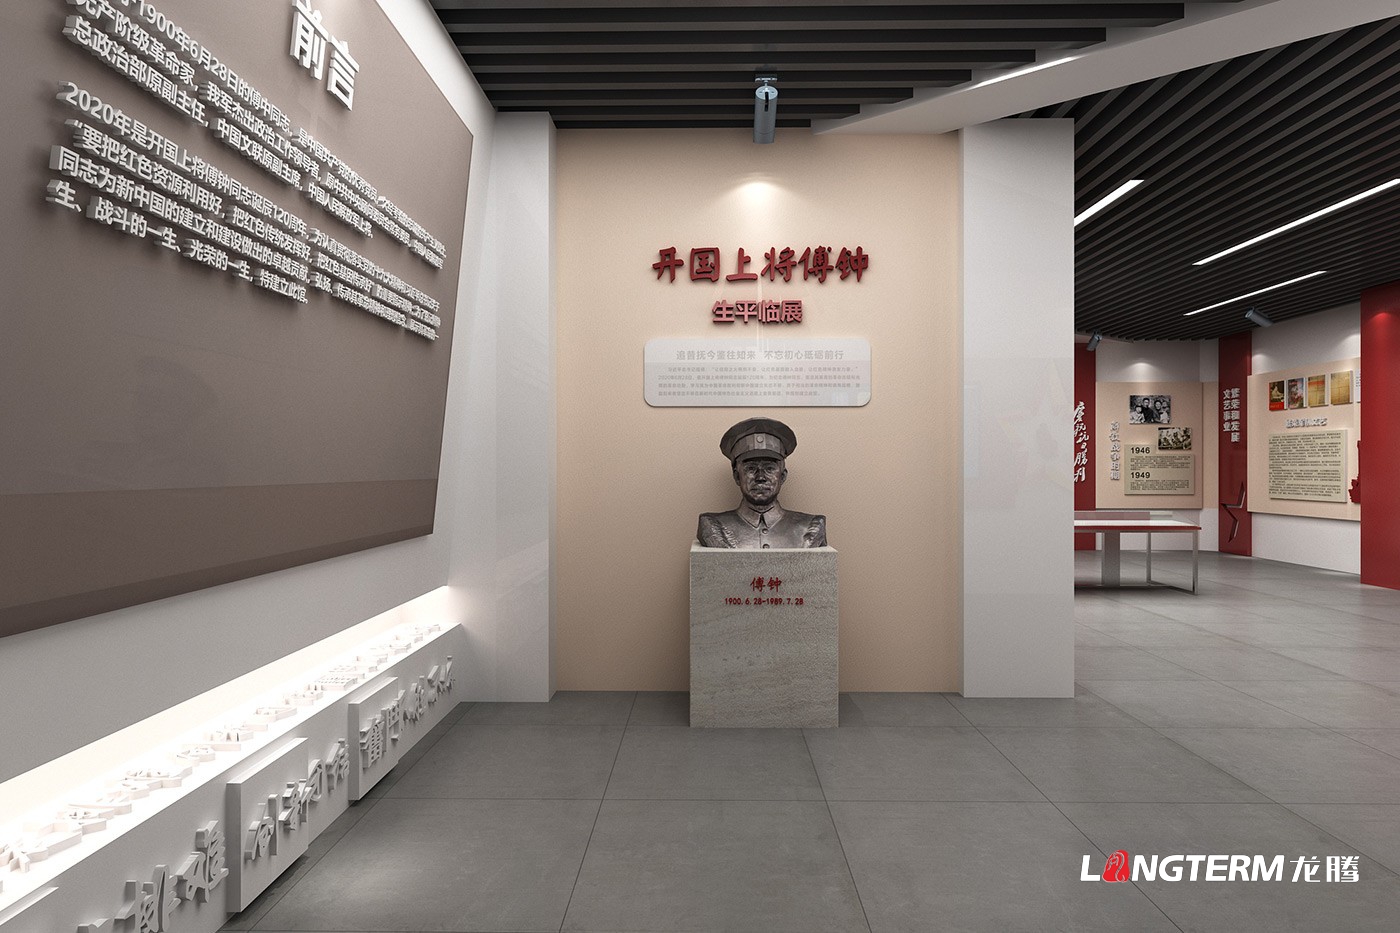 傅鐘同志革命精神展館設計效果圖_傅鐘紀念館紅色文化建設